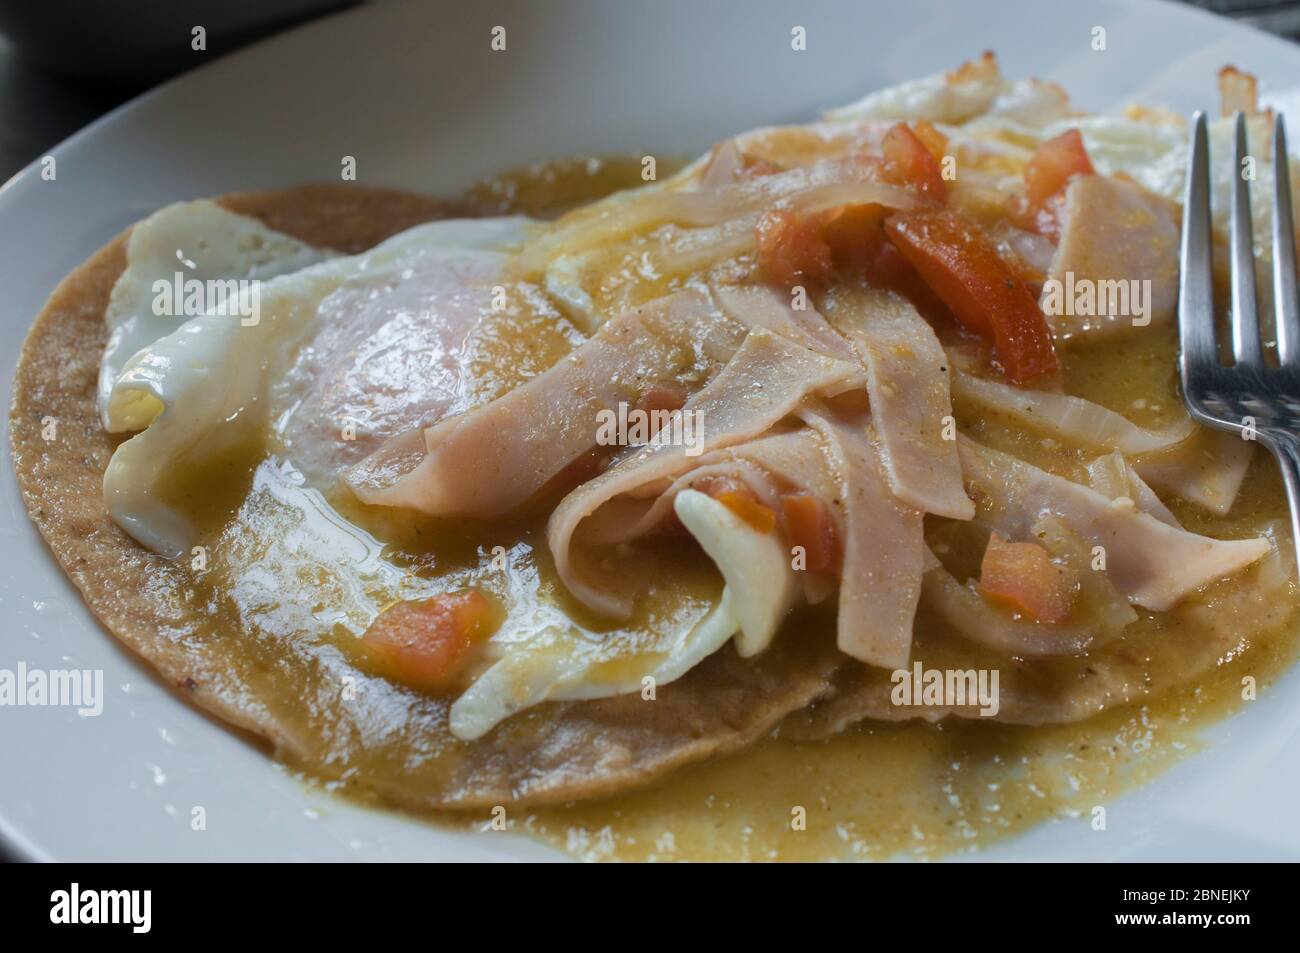 Concept de macro photographie ou gros plan, petit déjeuner mexicain huevos rancheros avec jambon et salsa épicée Banque D'Images